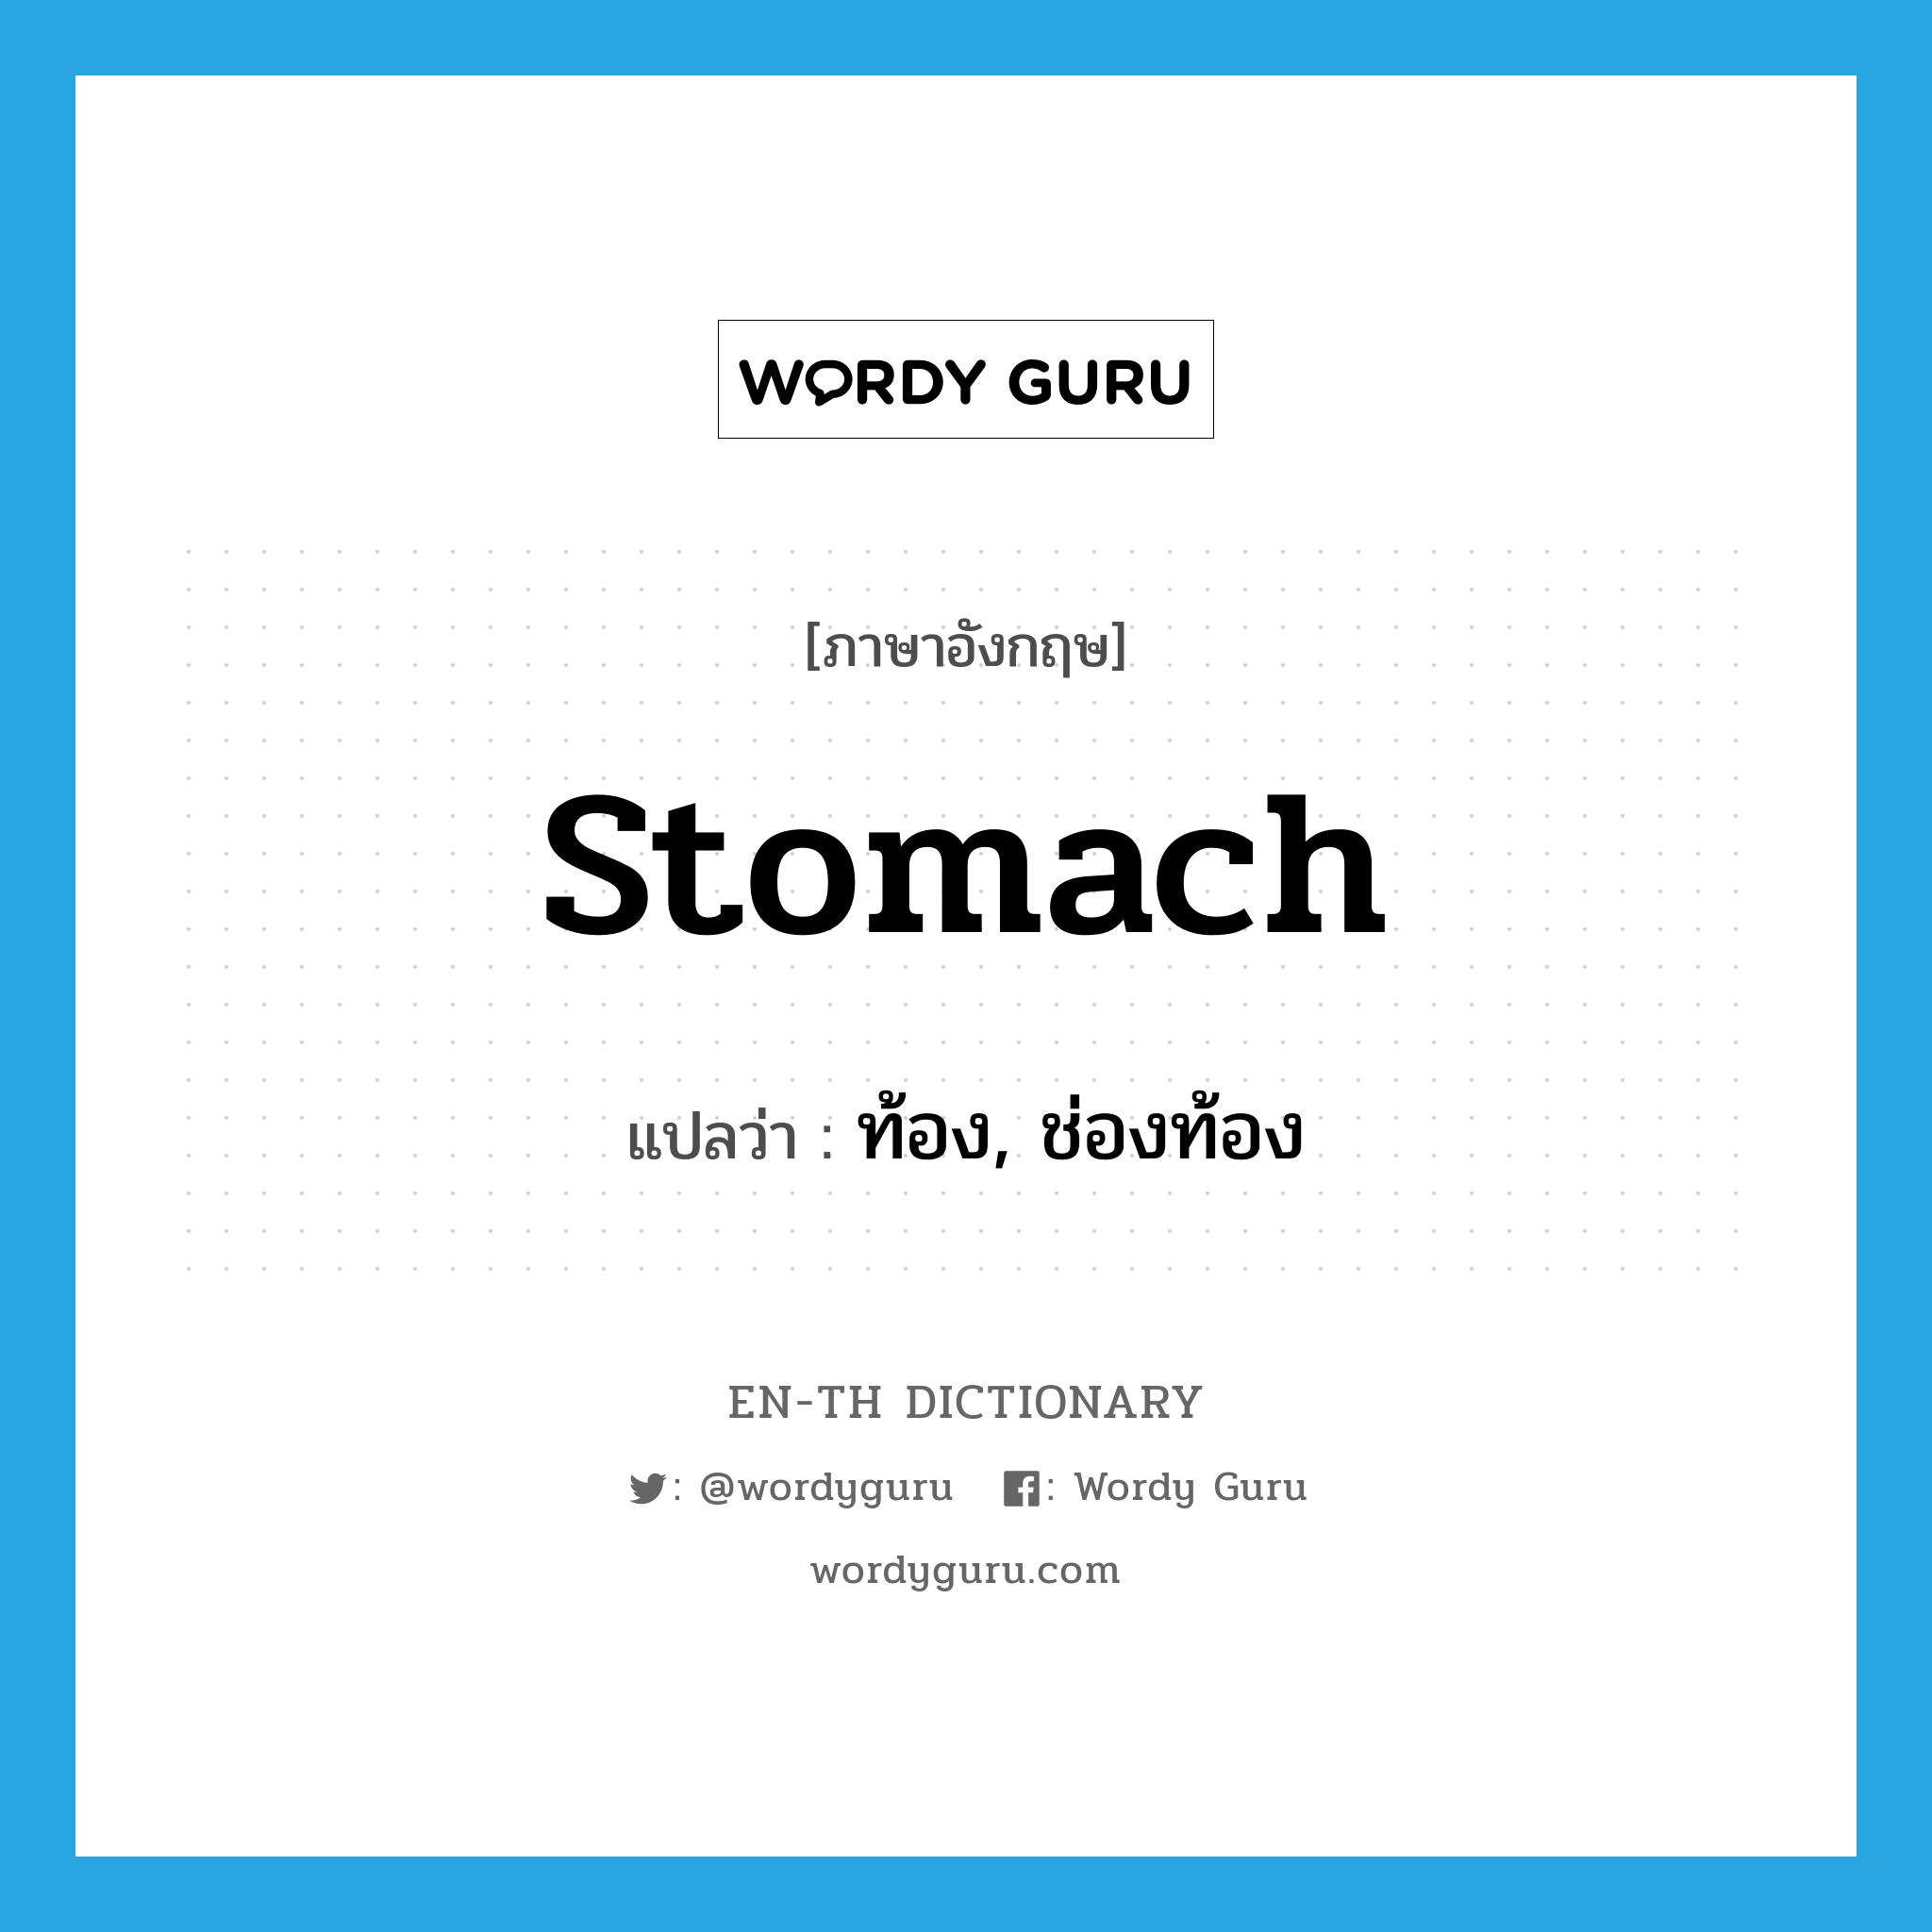 stomach แปลว่า?, คำศัพท์ภาษาอังกฤษ stomach แปลว่า ท้อง, ช่องท้อง ประเภท N หมวด N